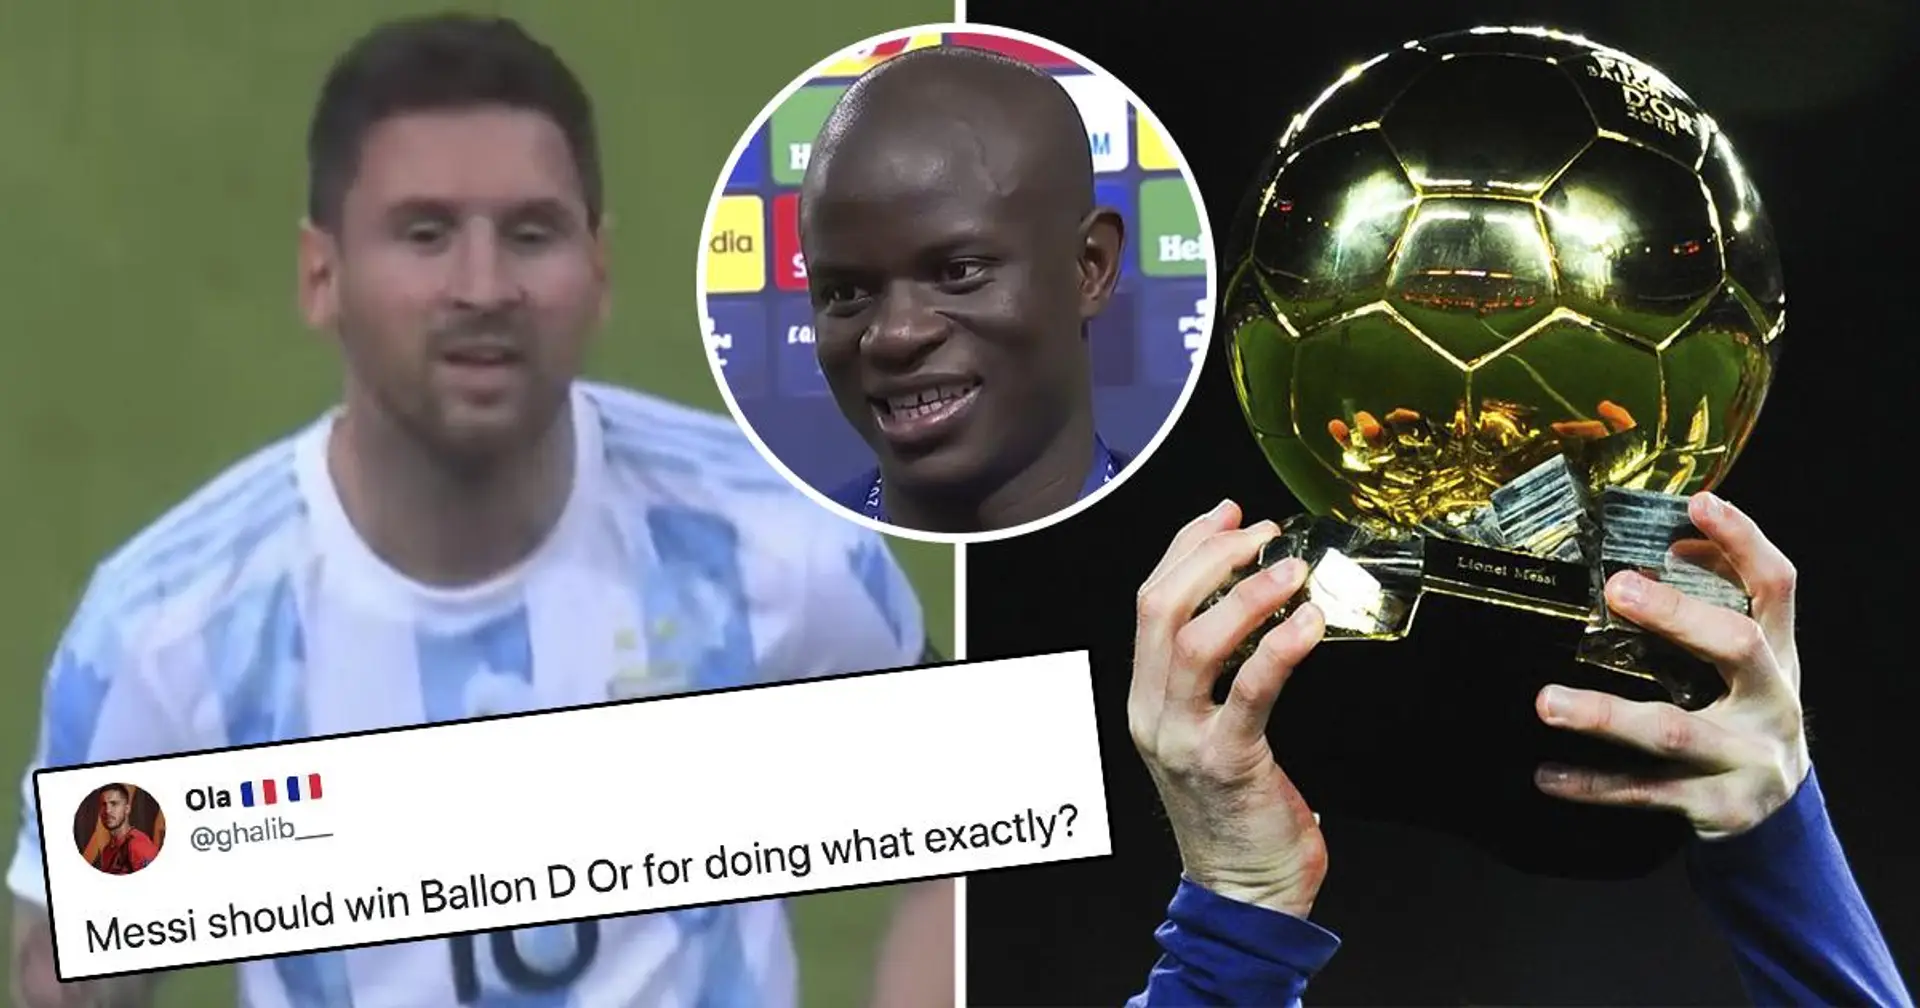 ¿Qué debería suceder para que Leo Messi gane su 7º Balón de Oro? Tu preguntaste, nosotros respondimos